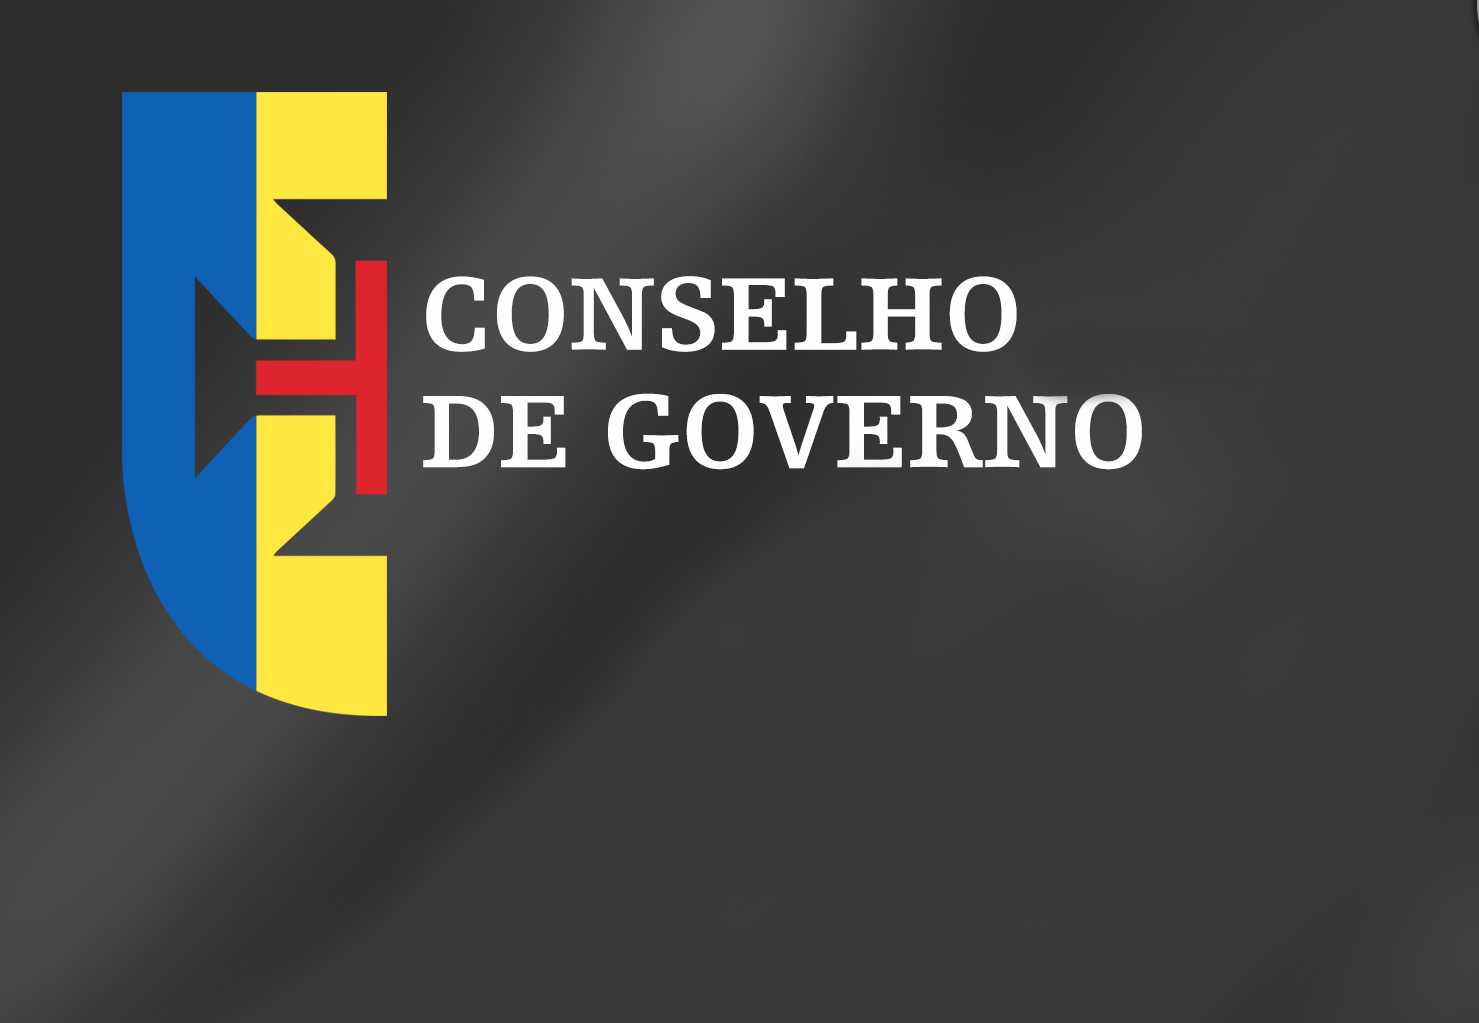 Conclusões Conselho de Governo - 30 de Julho de 2015